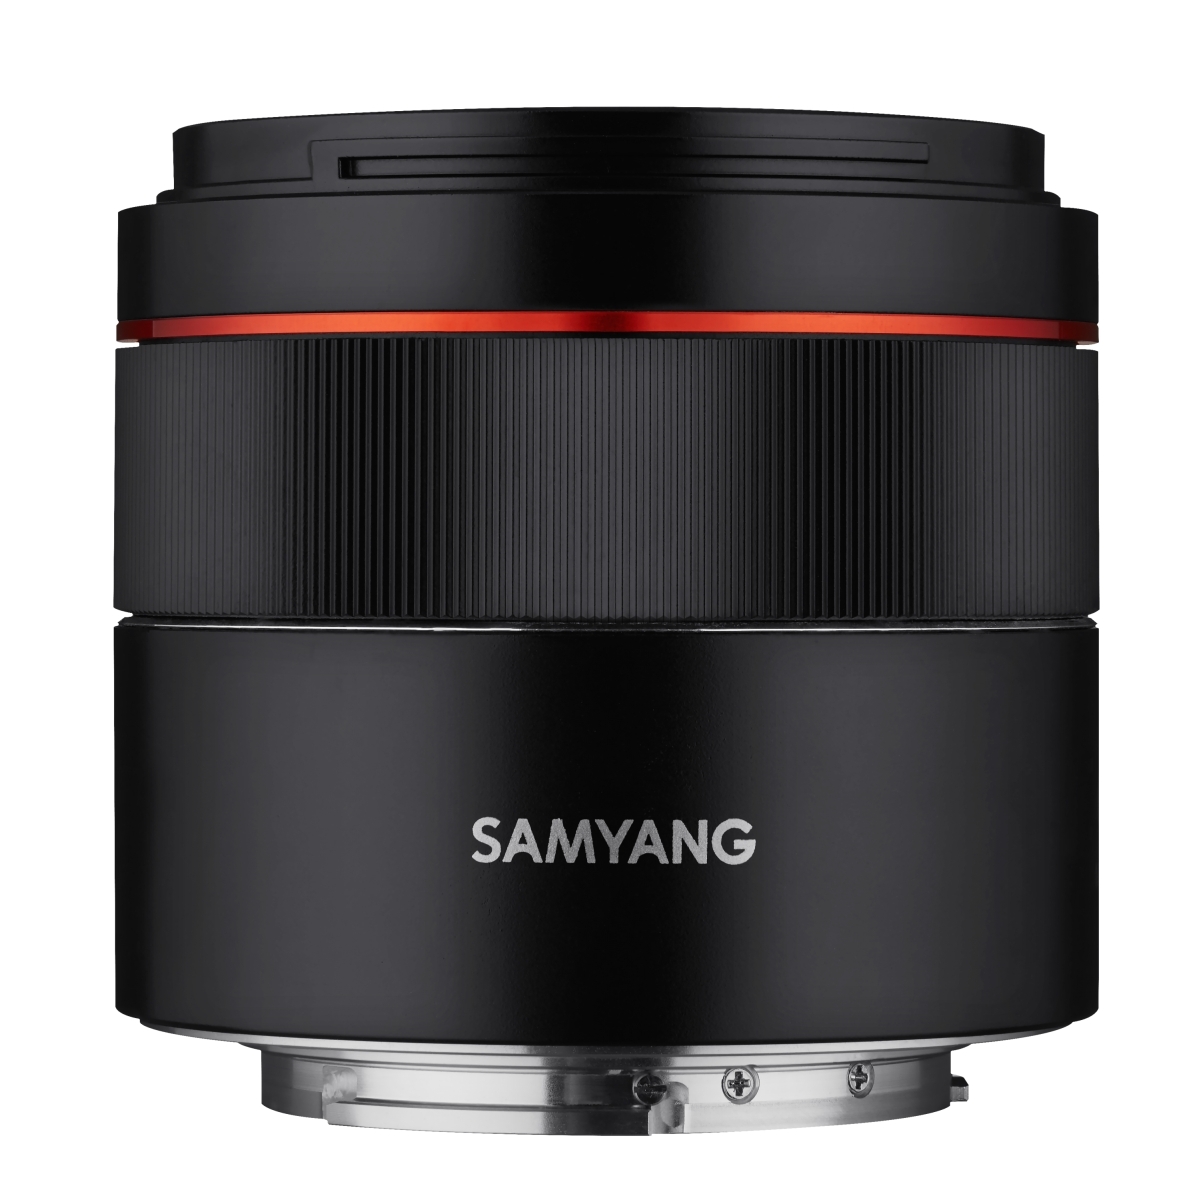 Samyang AF 45mm F1,8 FE für Sony E - Tiny but Premium